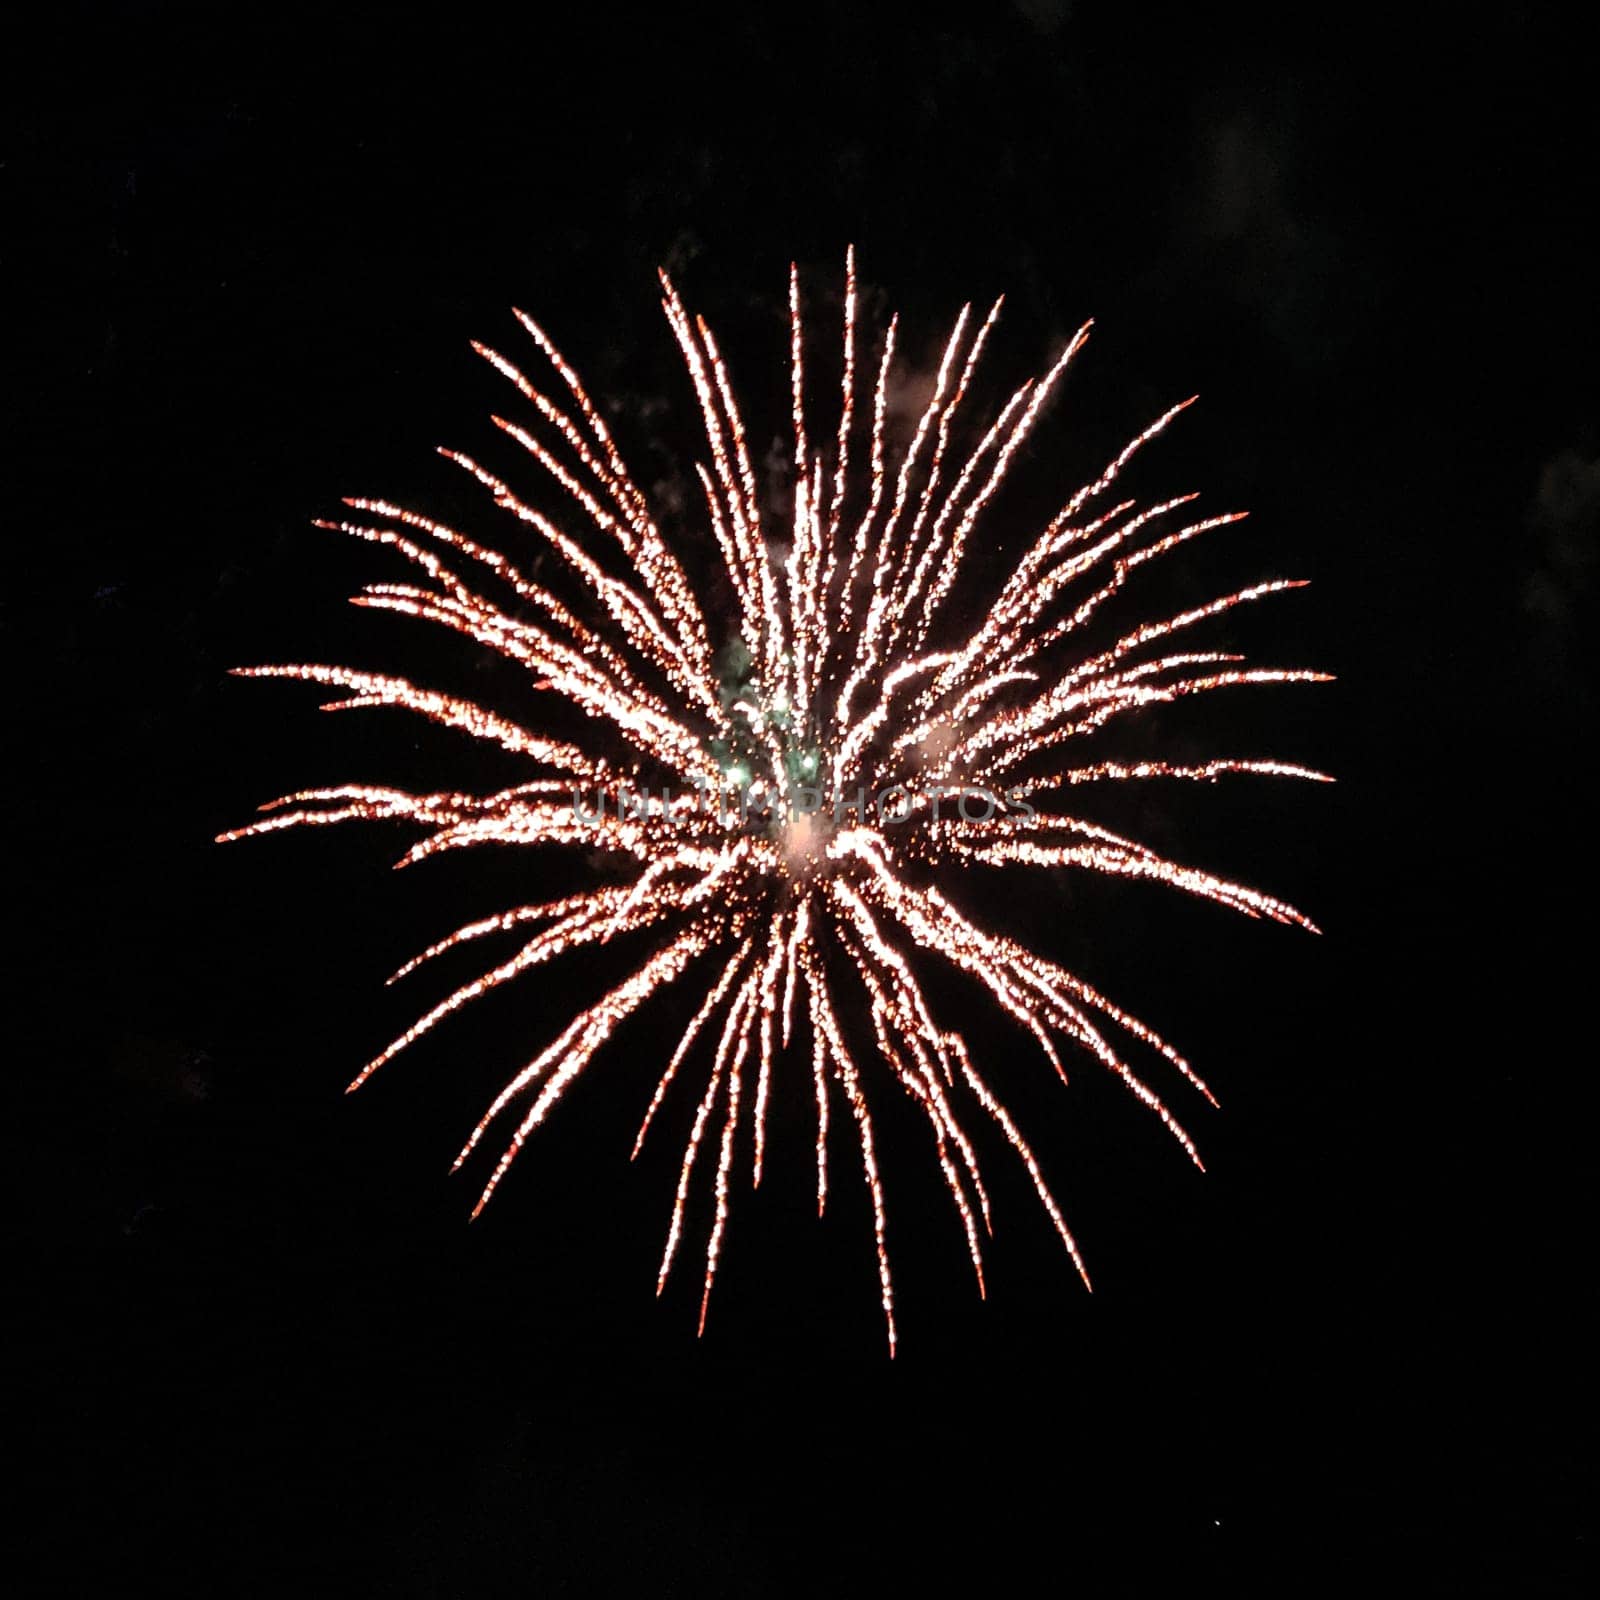 Circle explosion of real fireworks on black background for overlay blending mode by Rom4ek